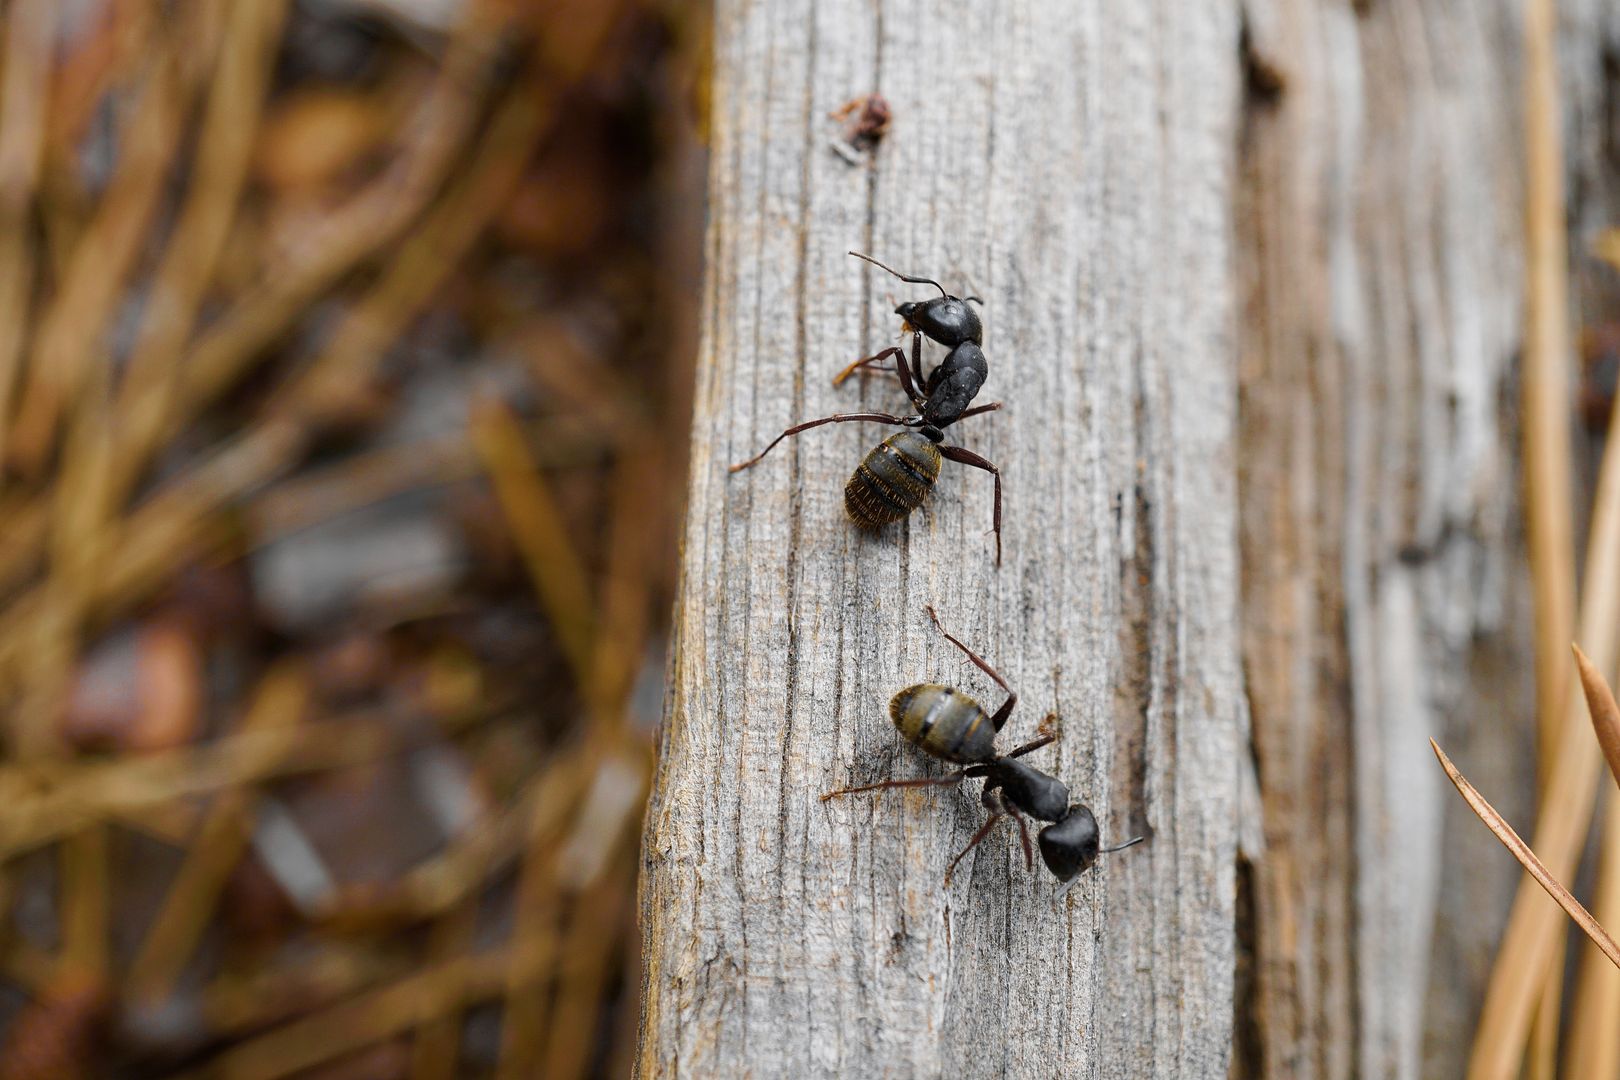 Domowa hodowla mrówek — od czego zacząć?